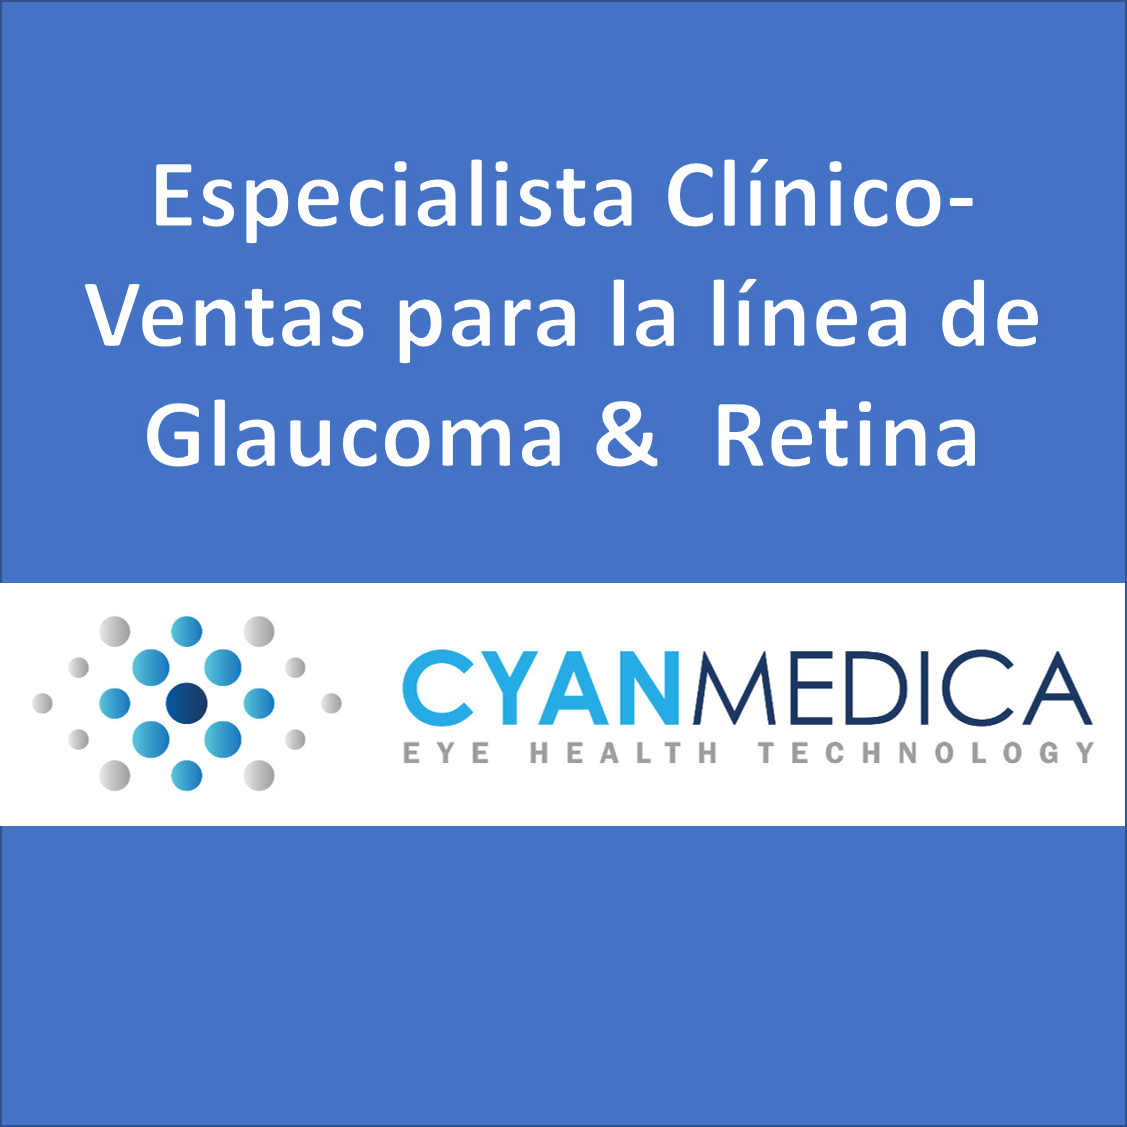 VACANTE - Especialista Clínico-Ventas para la línea de Glaucoma &  Retina / Cyan Medica